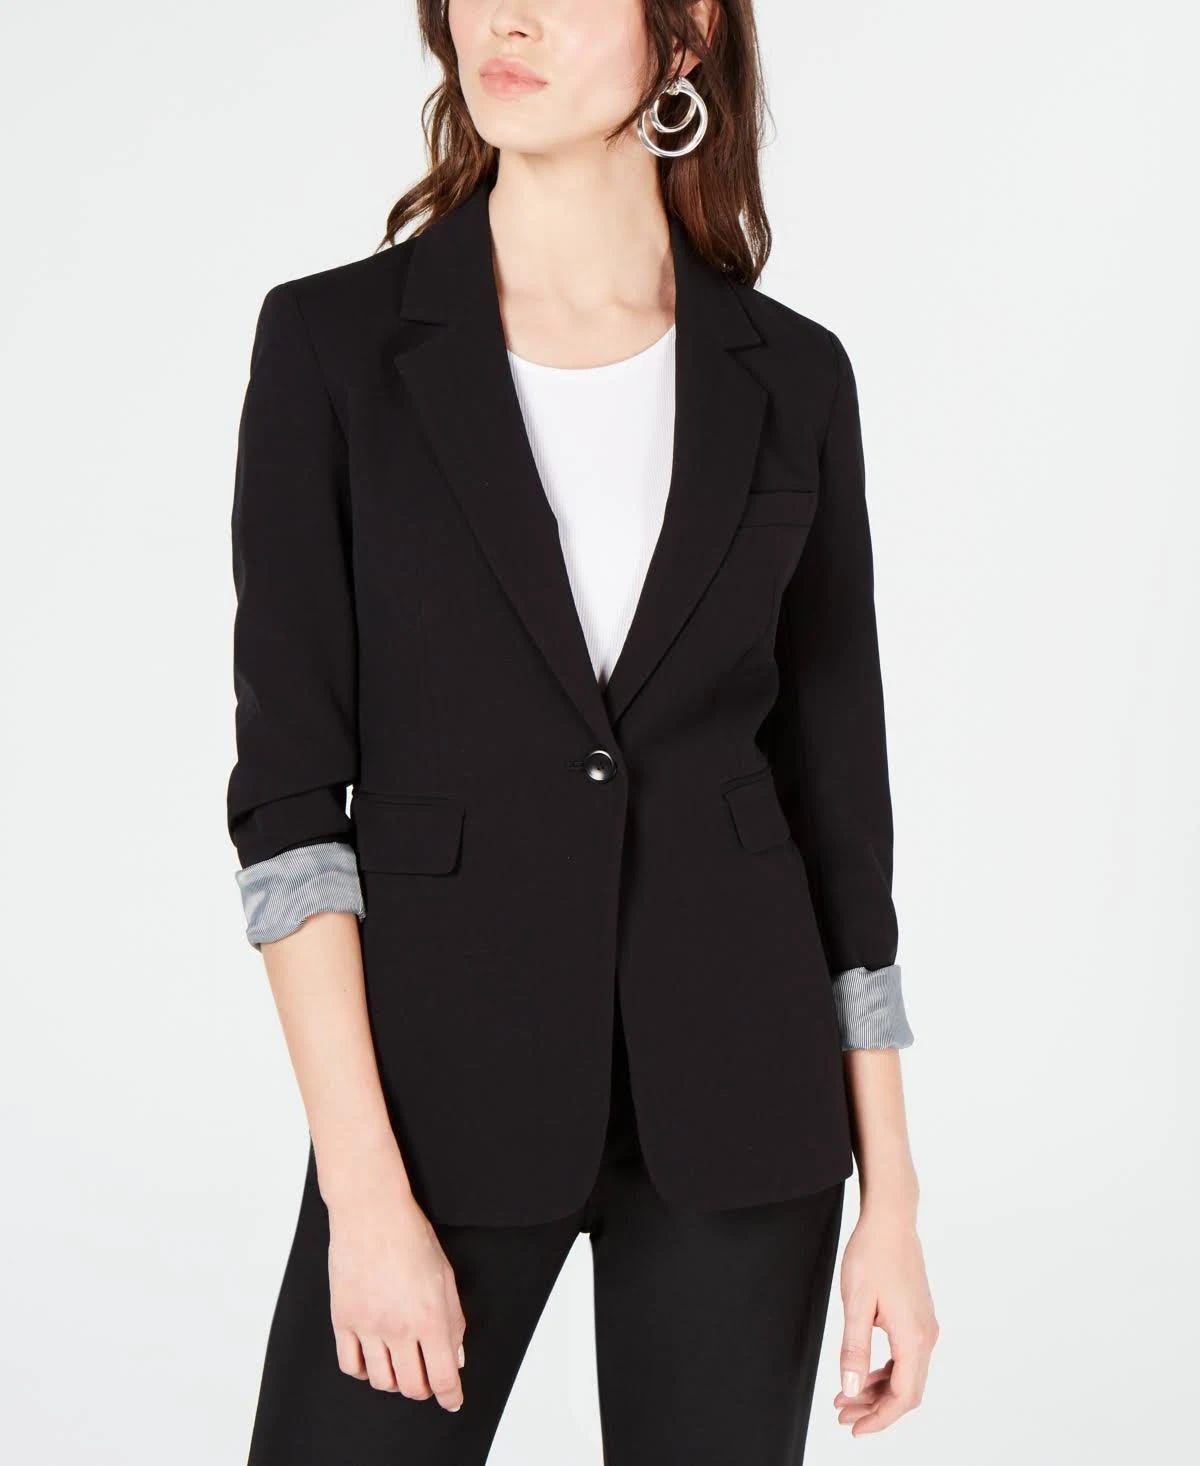 Modern One-Button Black Women's Blazer for Work | Image